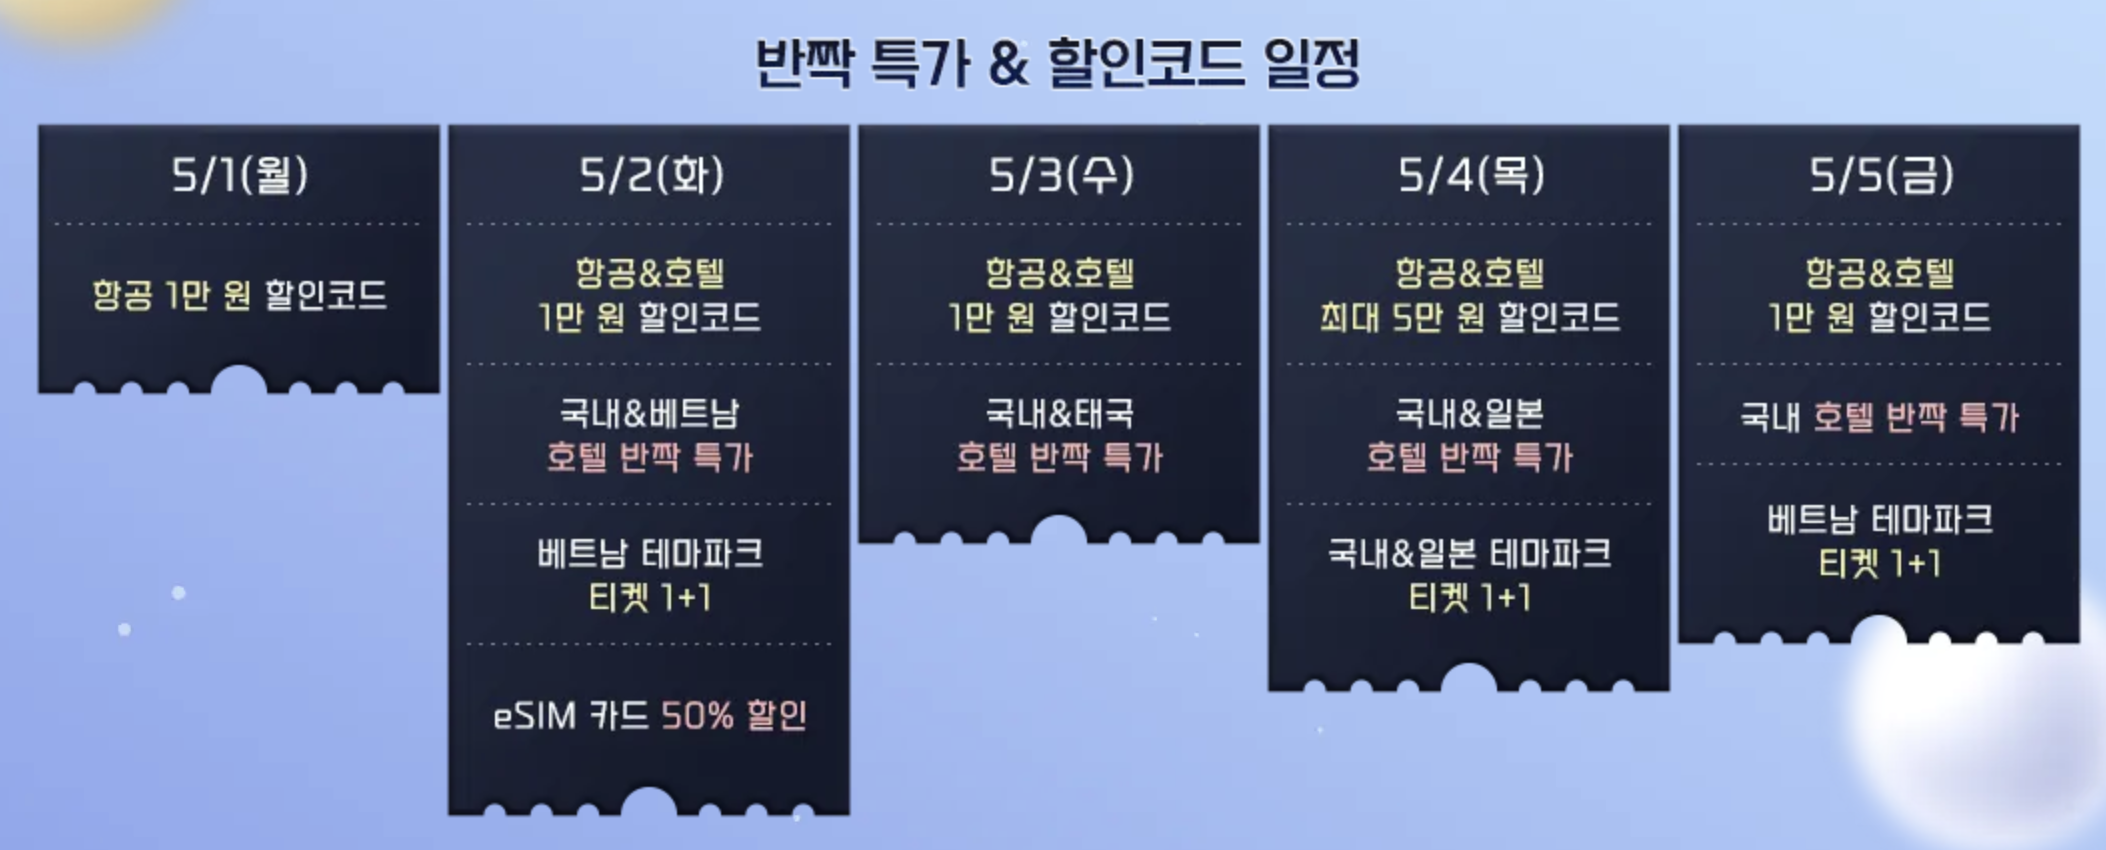 트립닷컴 5월 프로모션: 5일간 5성급호텔 특별세일 + 마카오 2박 연속시 50% 할인쿠폰